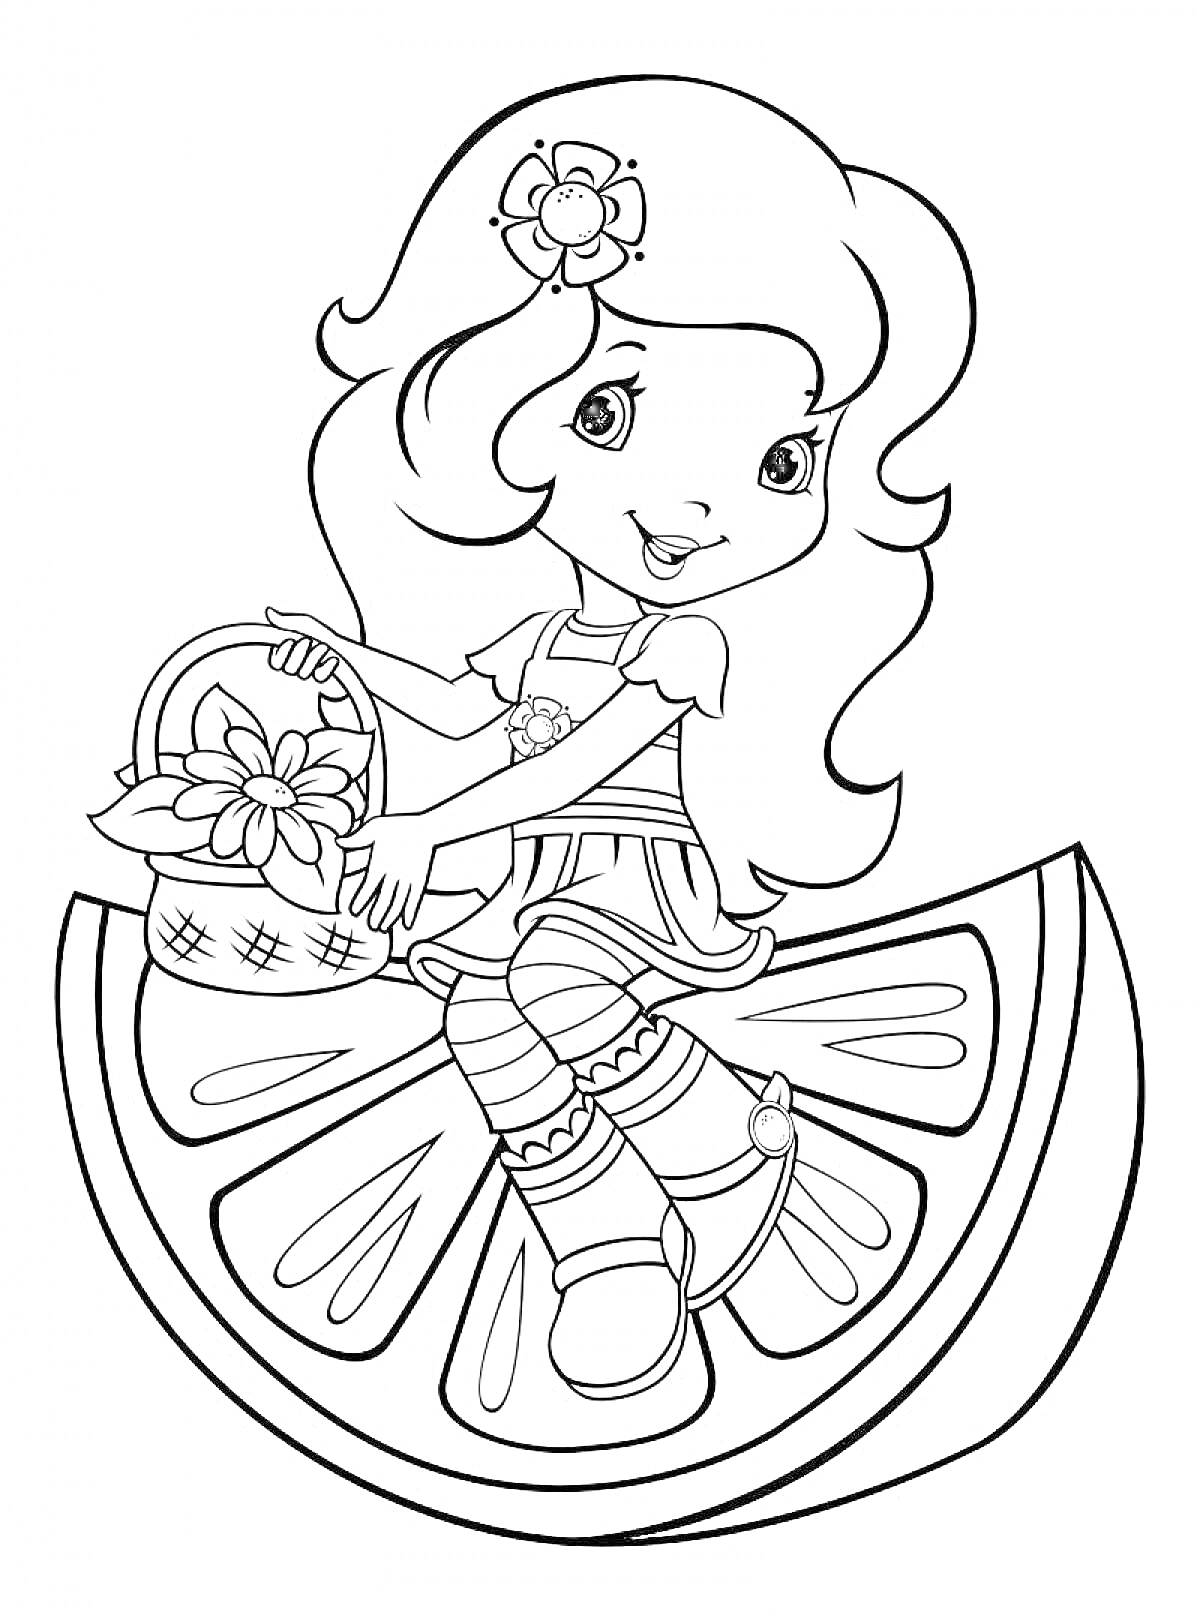 Раскраска Девочка с длинными волосами и цветком в волосах, сидящая на дольке фрукта, с корзиной цветов